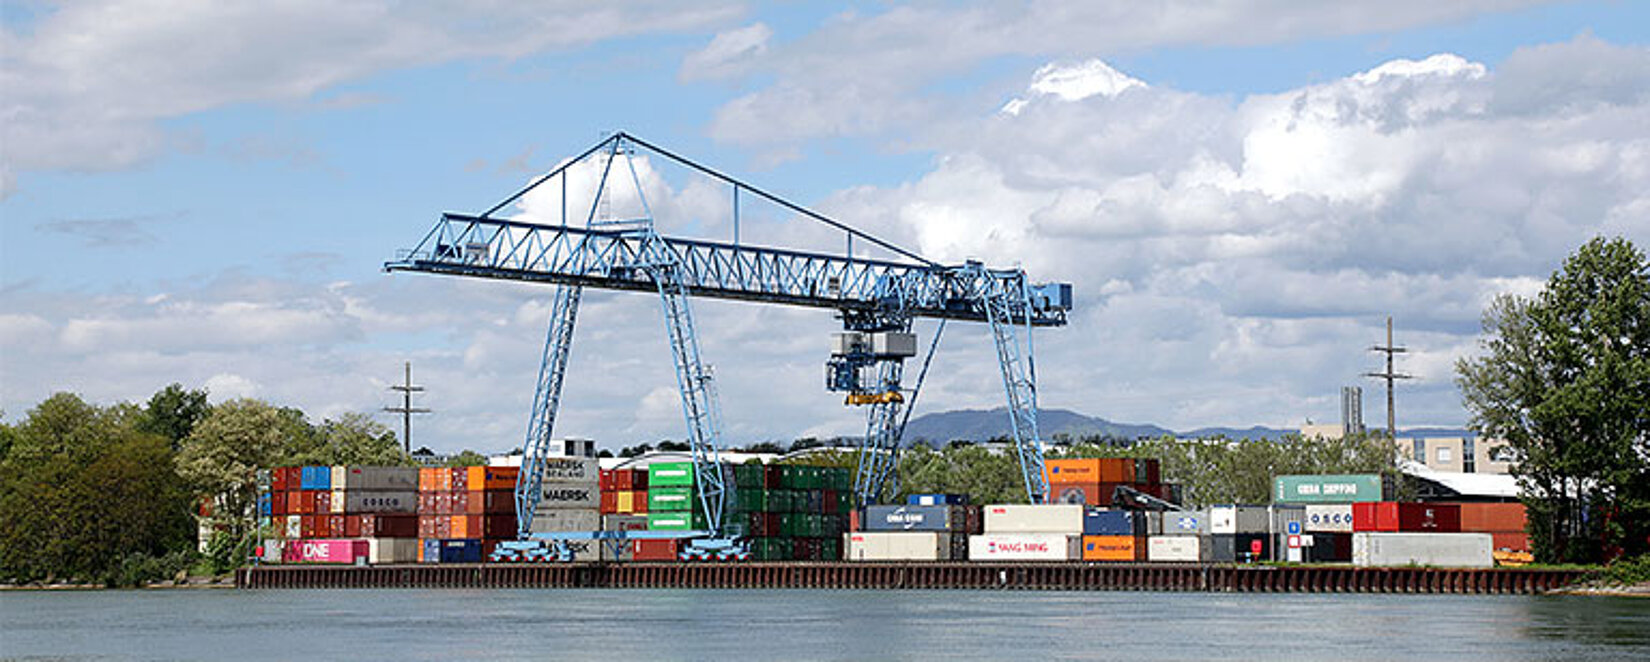 Container-Terminal Weil am Rhein mit Fluss im Vordergrund